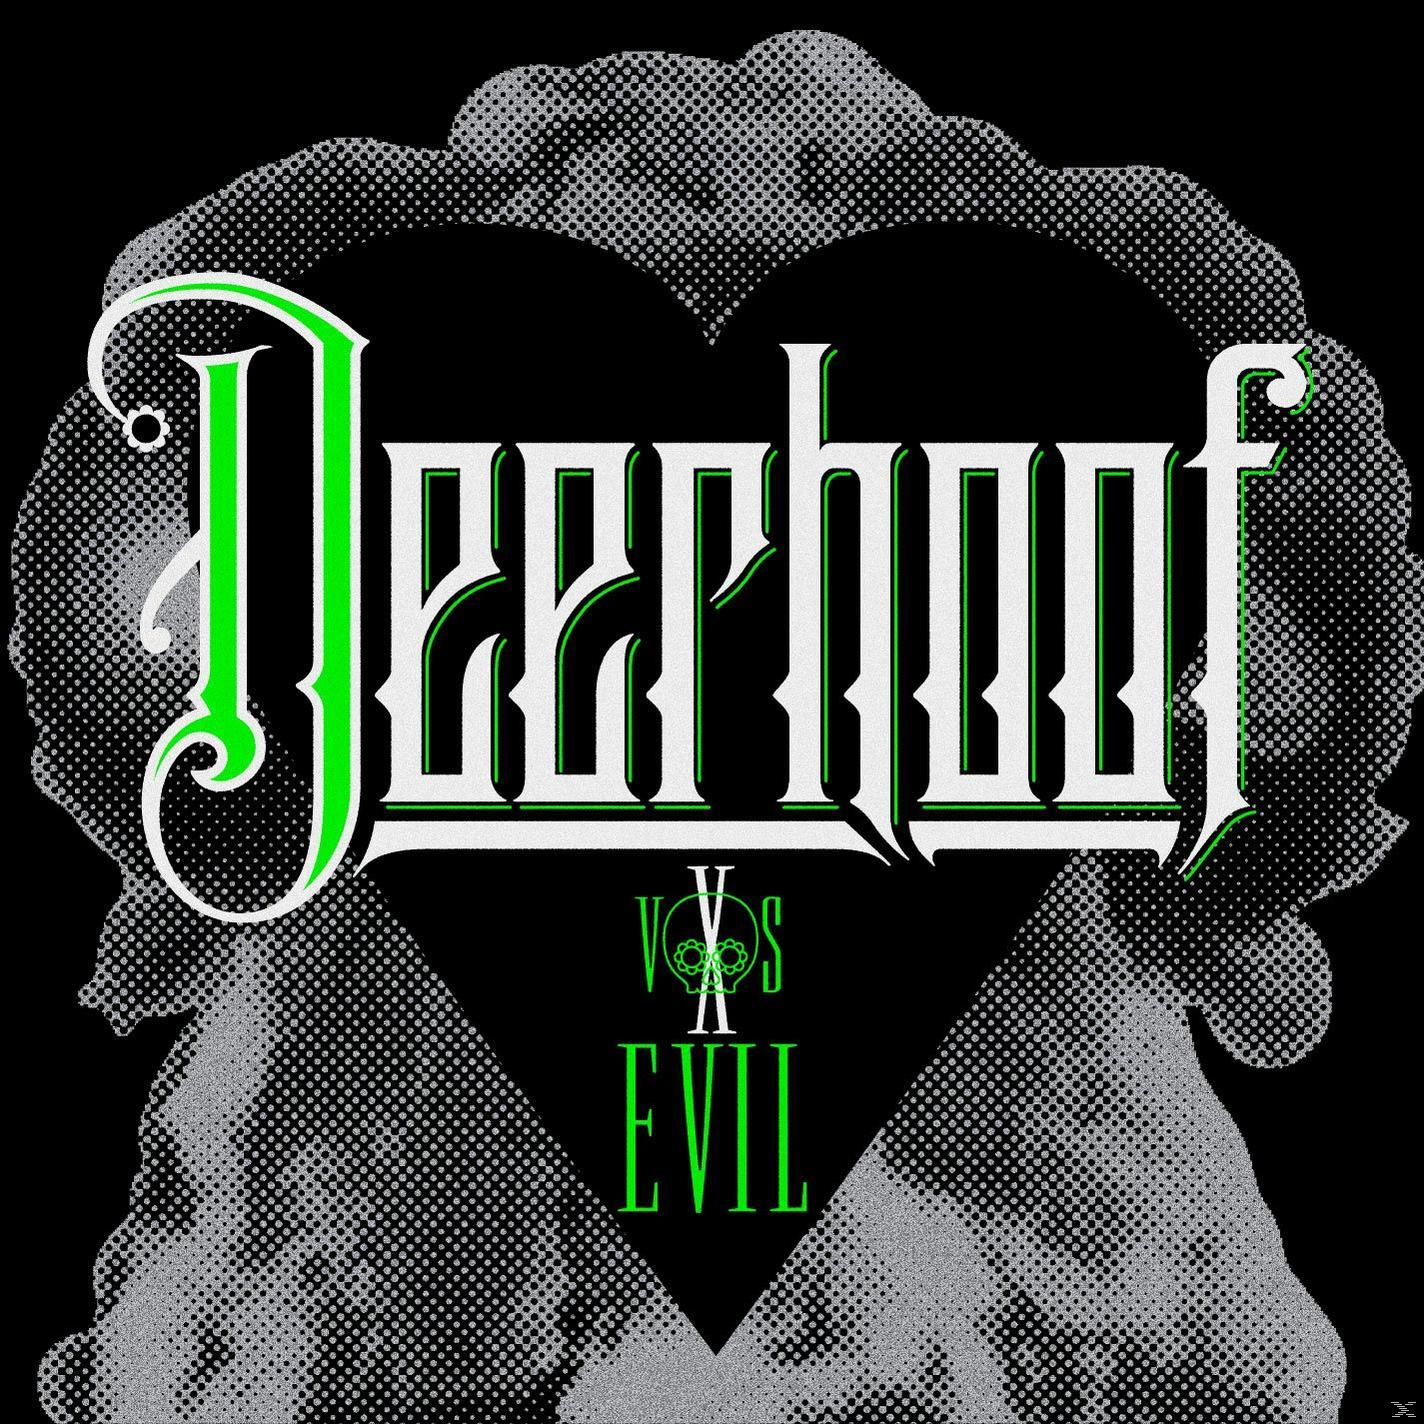 Deerhoof - Deerhoof Vs. - (CD) Evil